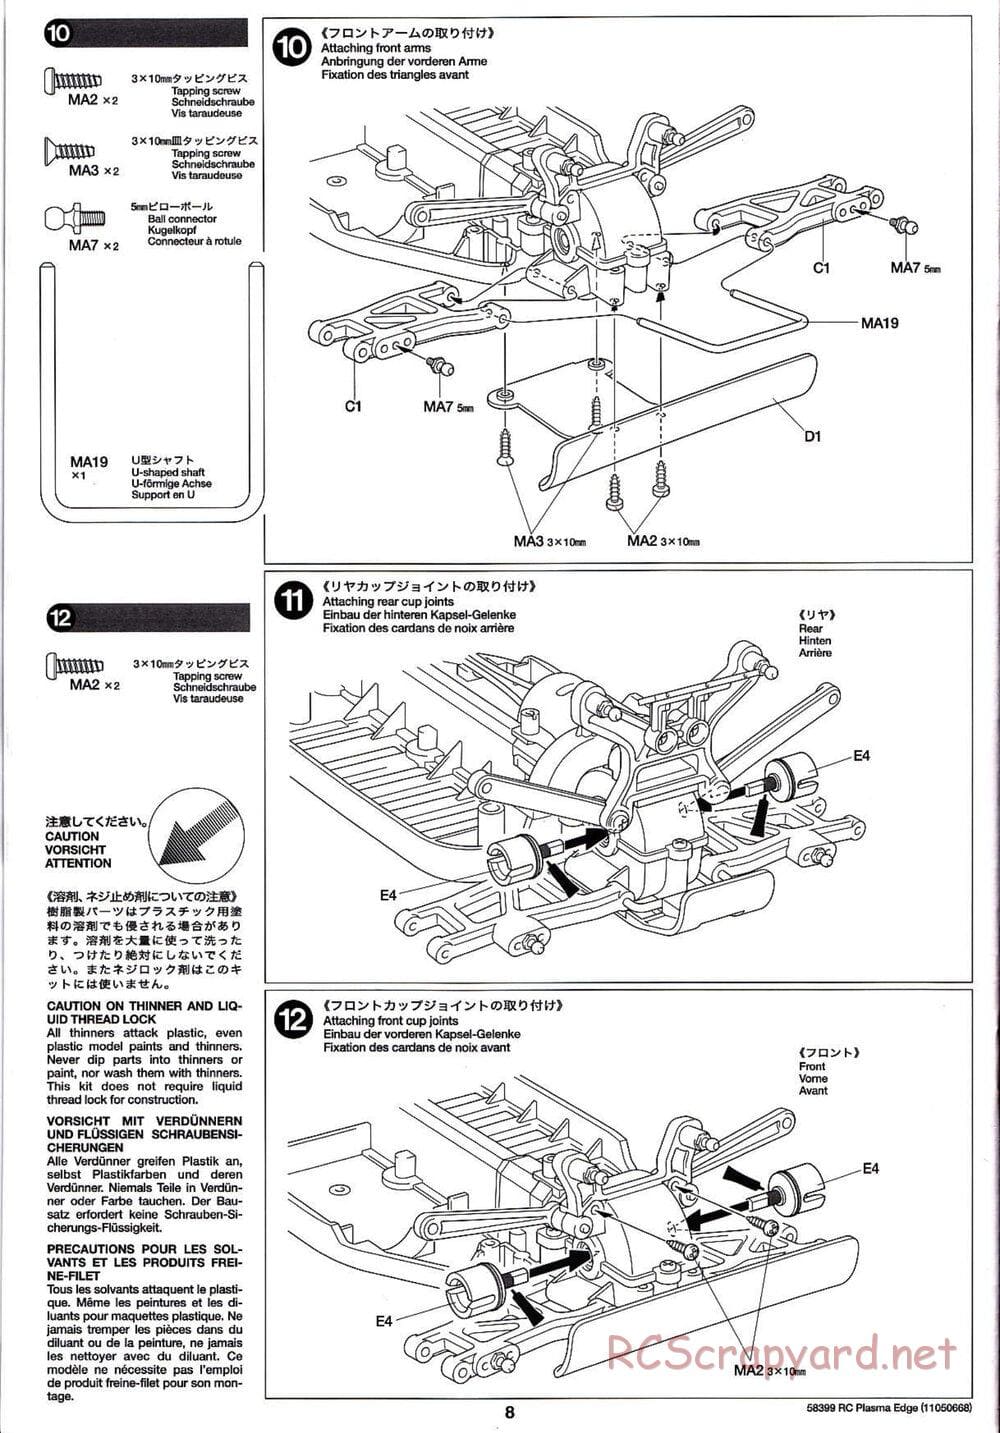 Tamiya - Plasma Edge Chassis - Manual - Page 8